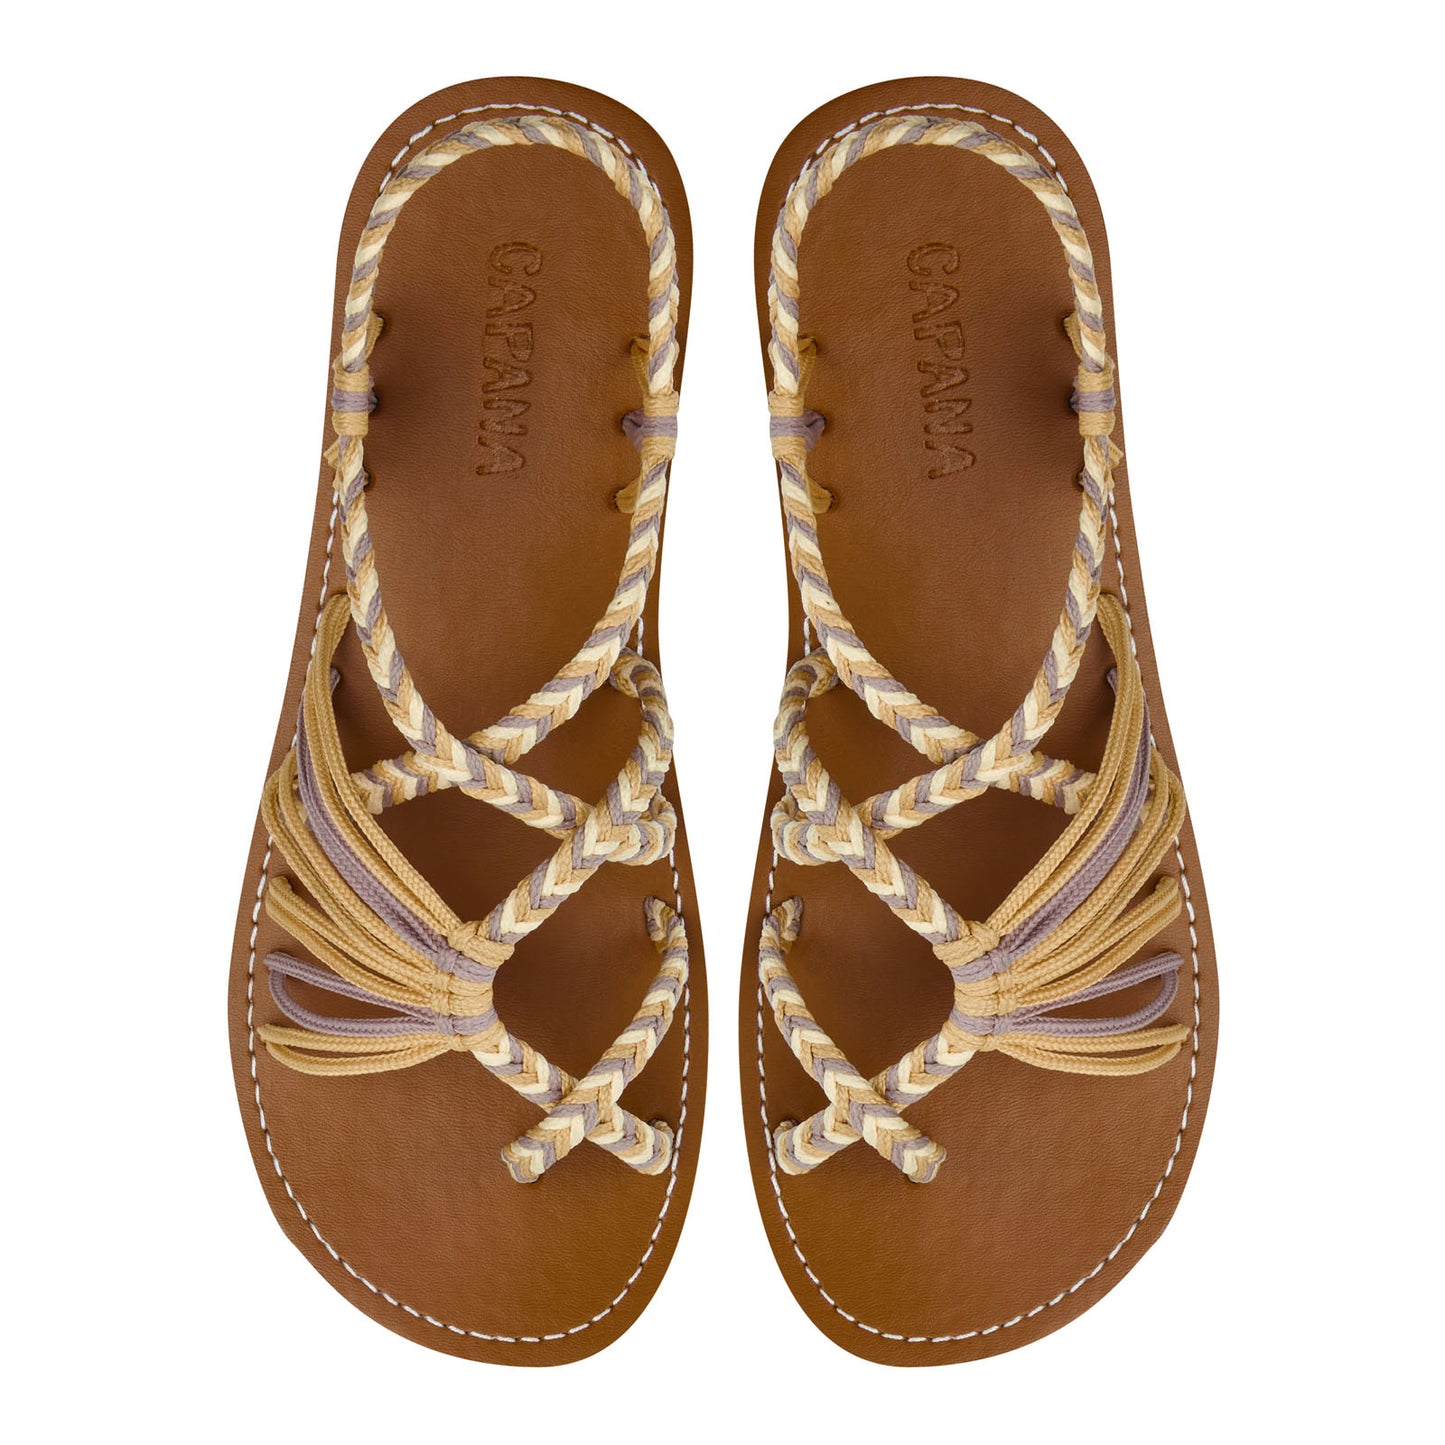 Banyan Sahara Rope Sandals Beige Crisscross design Flat sandals for women